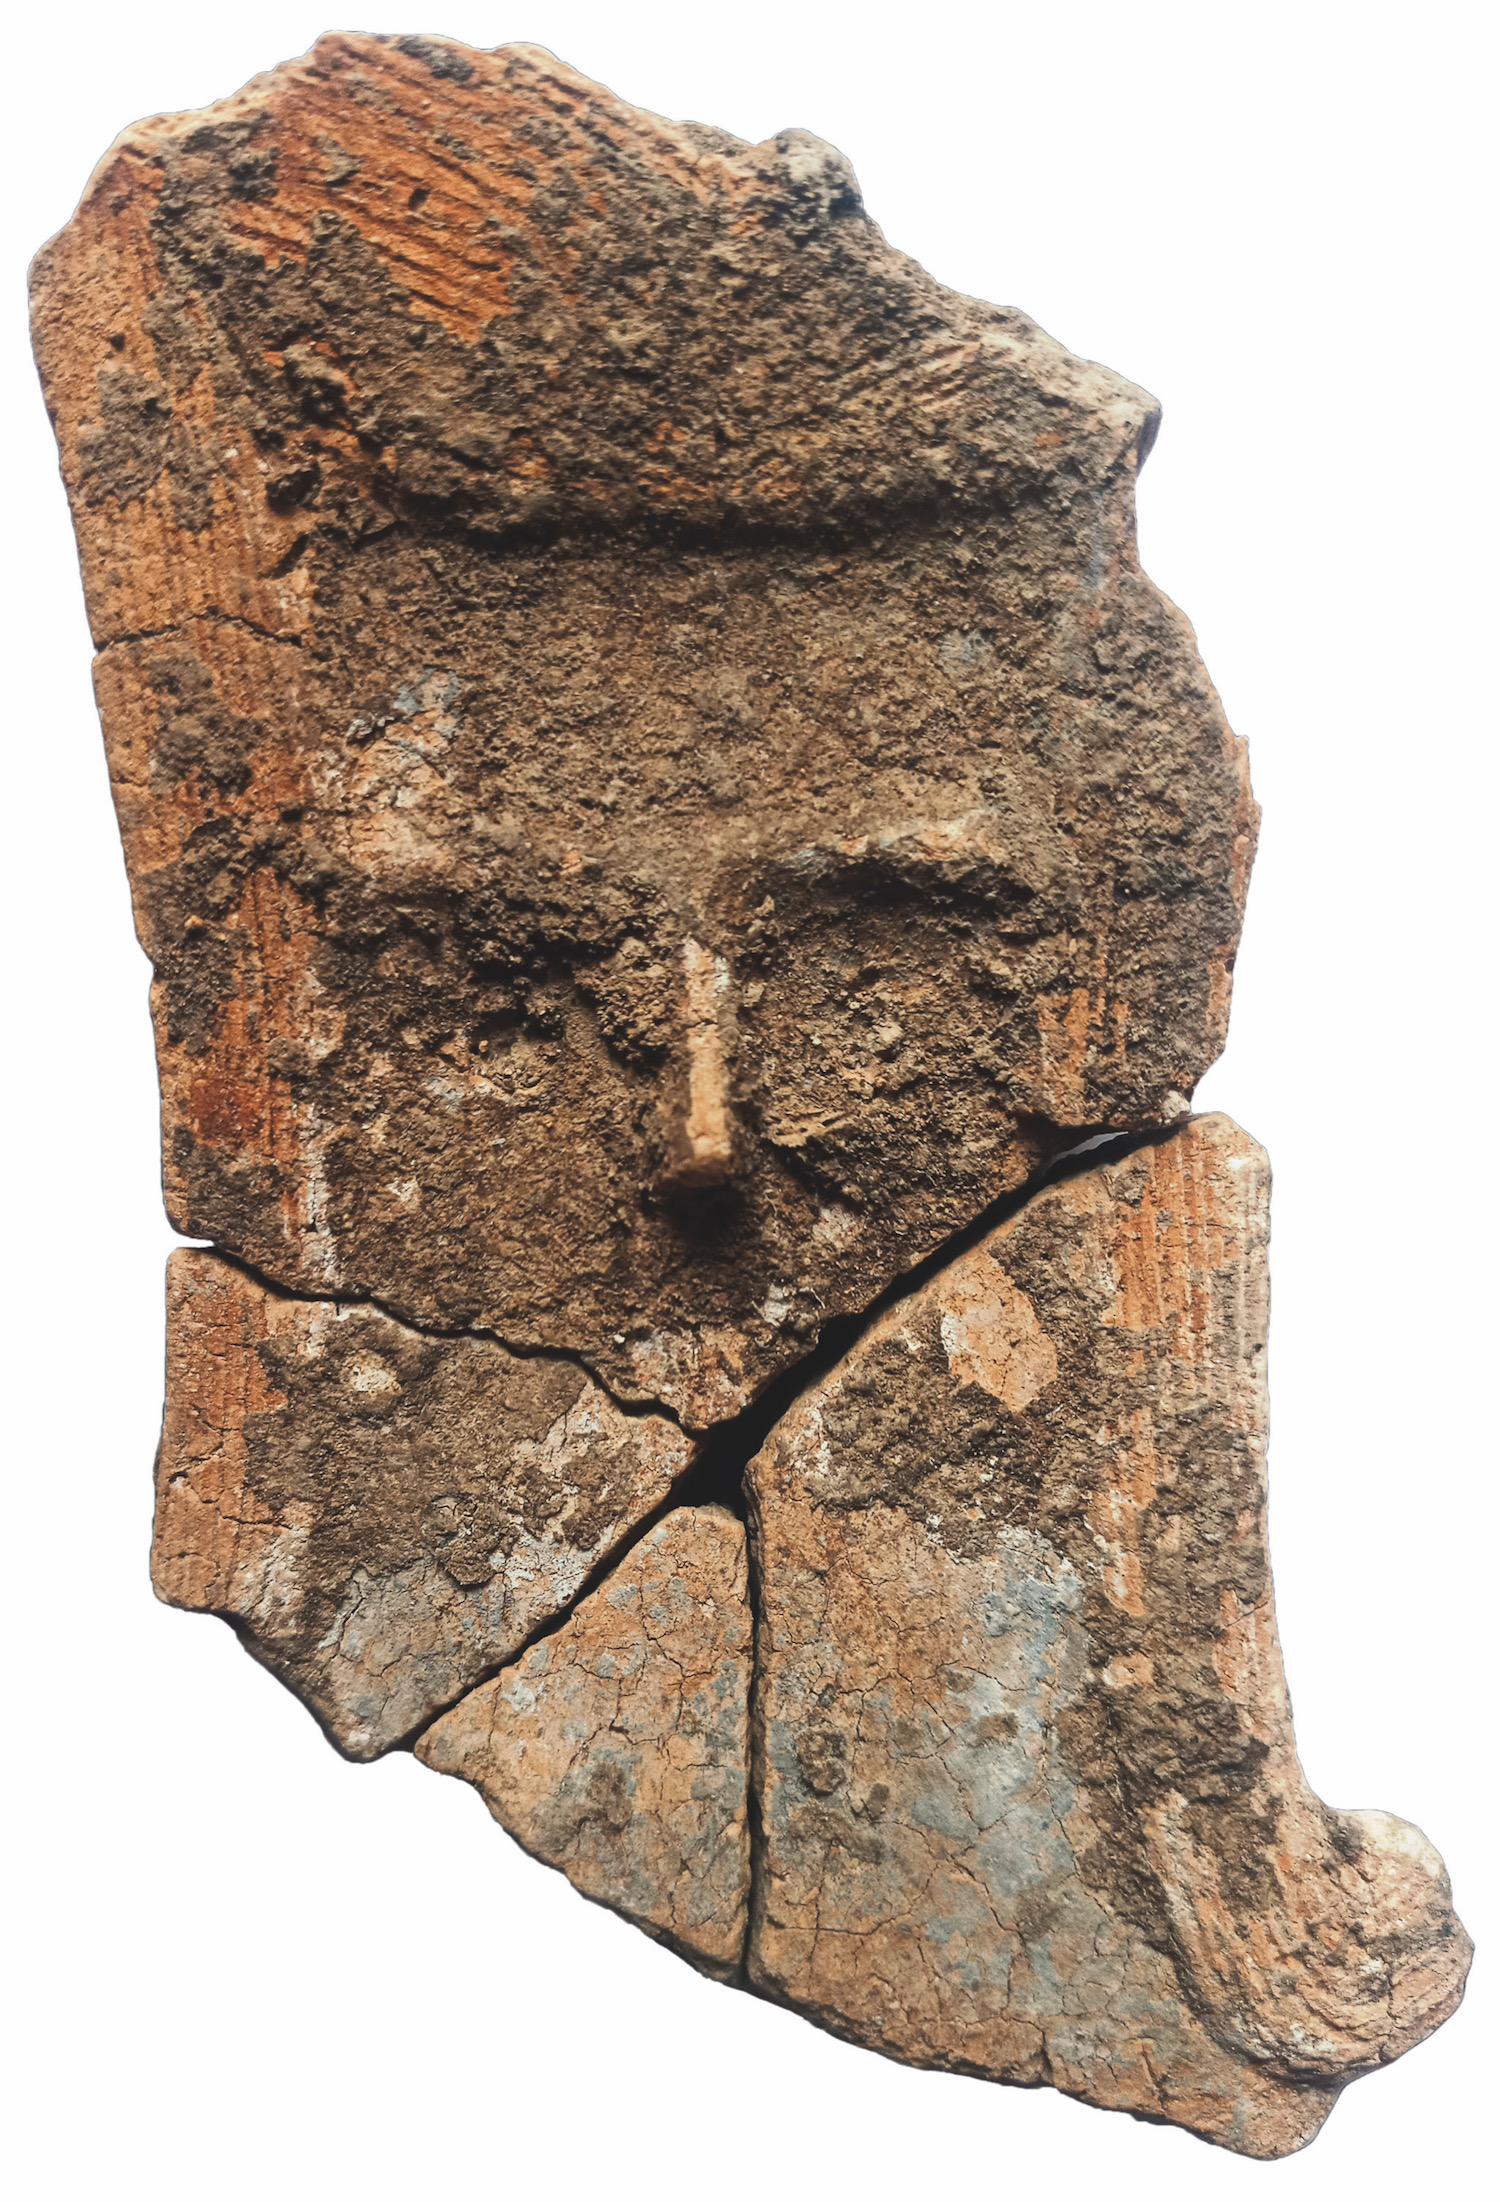 La figurine néolithique trouvée à Montpellier et datée entre 3900 et 3700 avant notre ère (détail). Les traits du visage, la coiffe, ainsi que les traces de polychromie sont bien visibles. Cliché de travail réalisé avant nettoyage, stabilisation et restauration. © ACTER